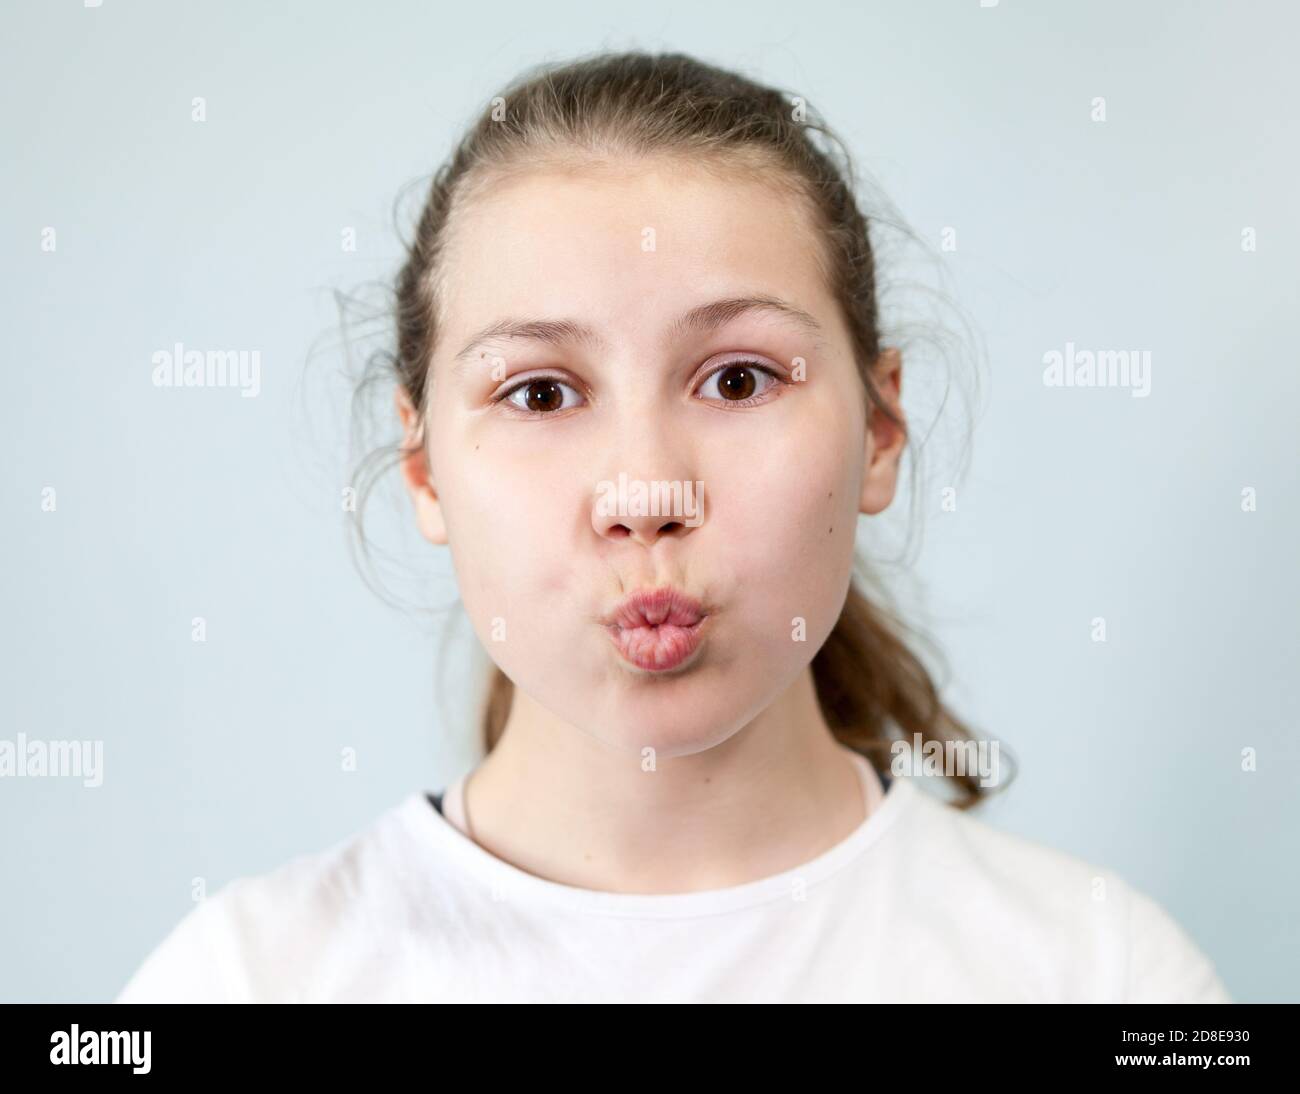 Avant-jeune fille fait un baiser avec des lèvres, regardant l'appareil photo, portrait sur fond, série d'émotions Banque D'Images